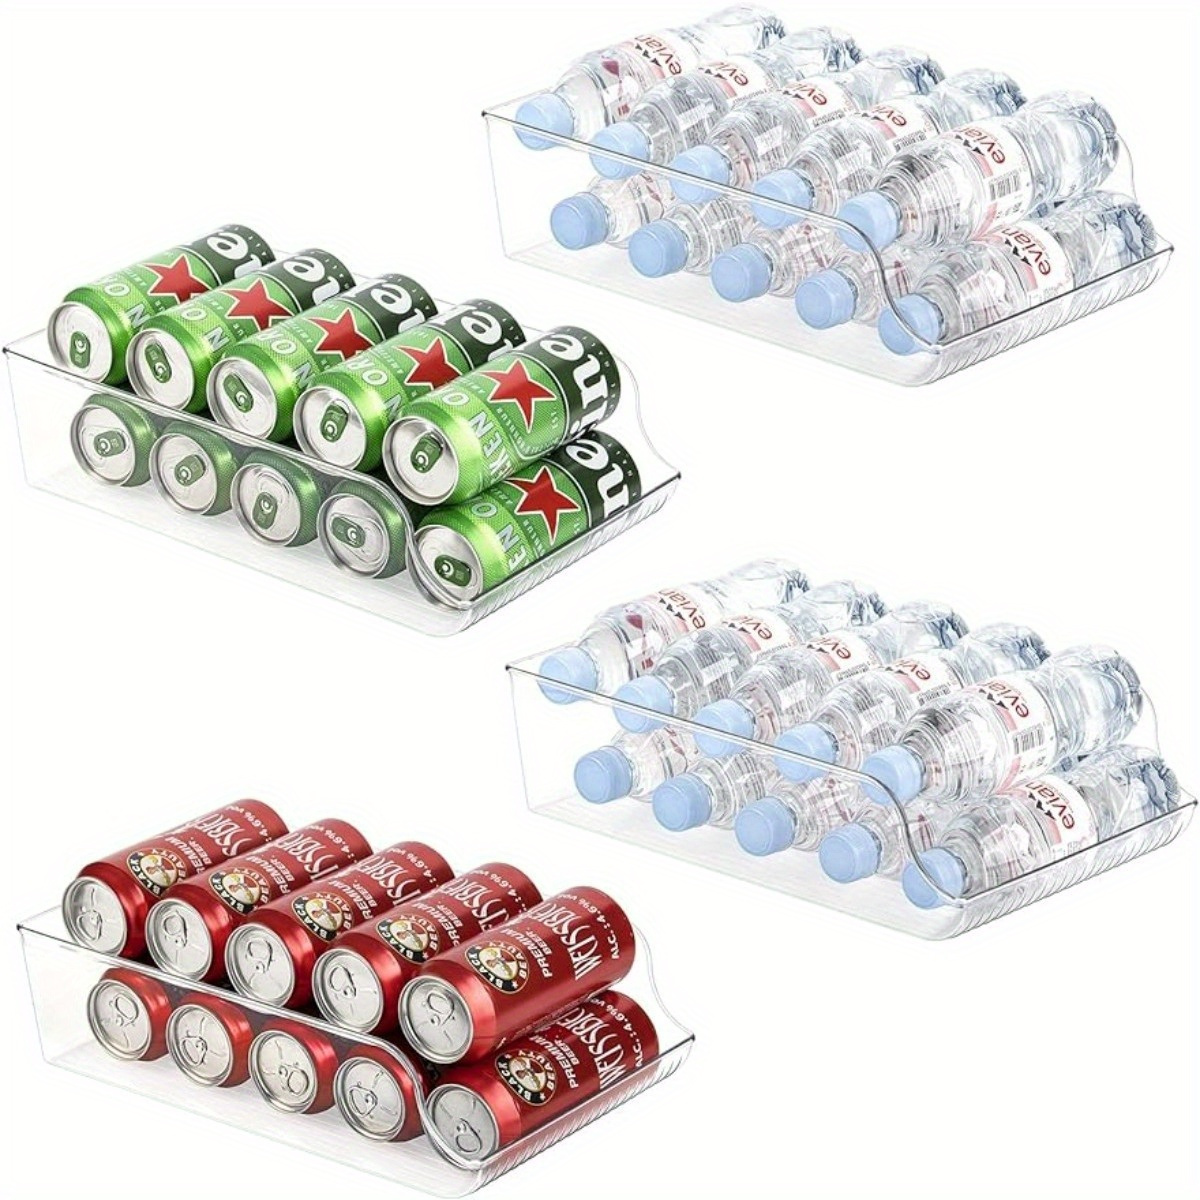 Organizador de latas de soda rodante para refrigerador, dispensador de  latas para cerveza, soda, seltzer, organizador de refrescos para 10 latas  de